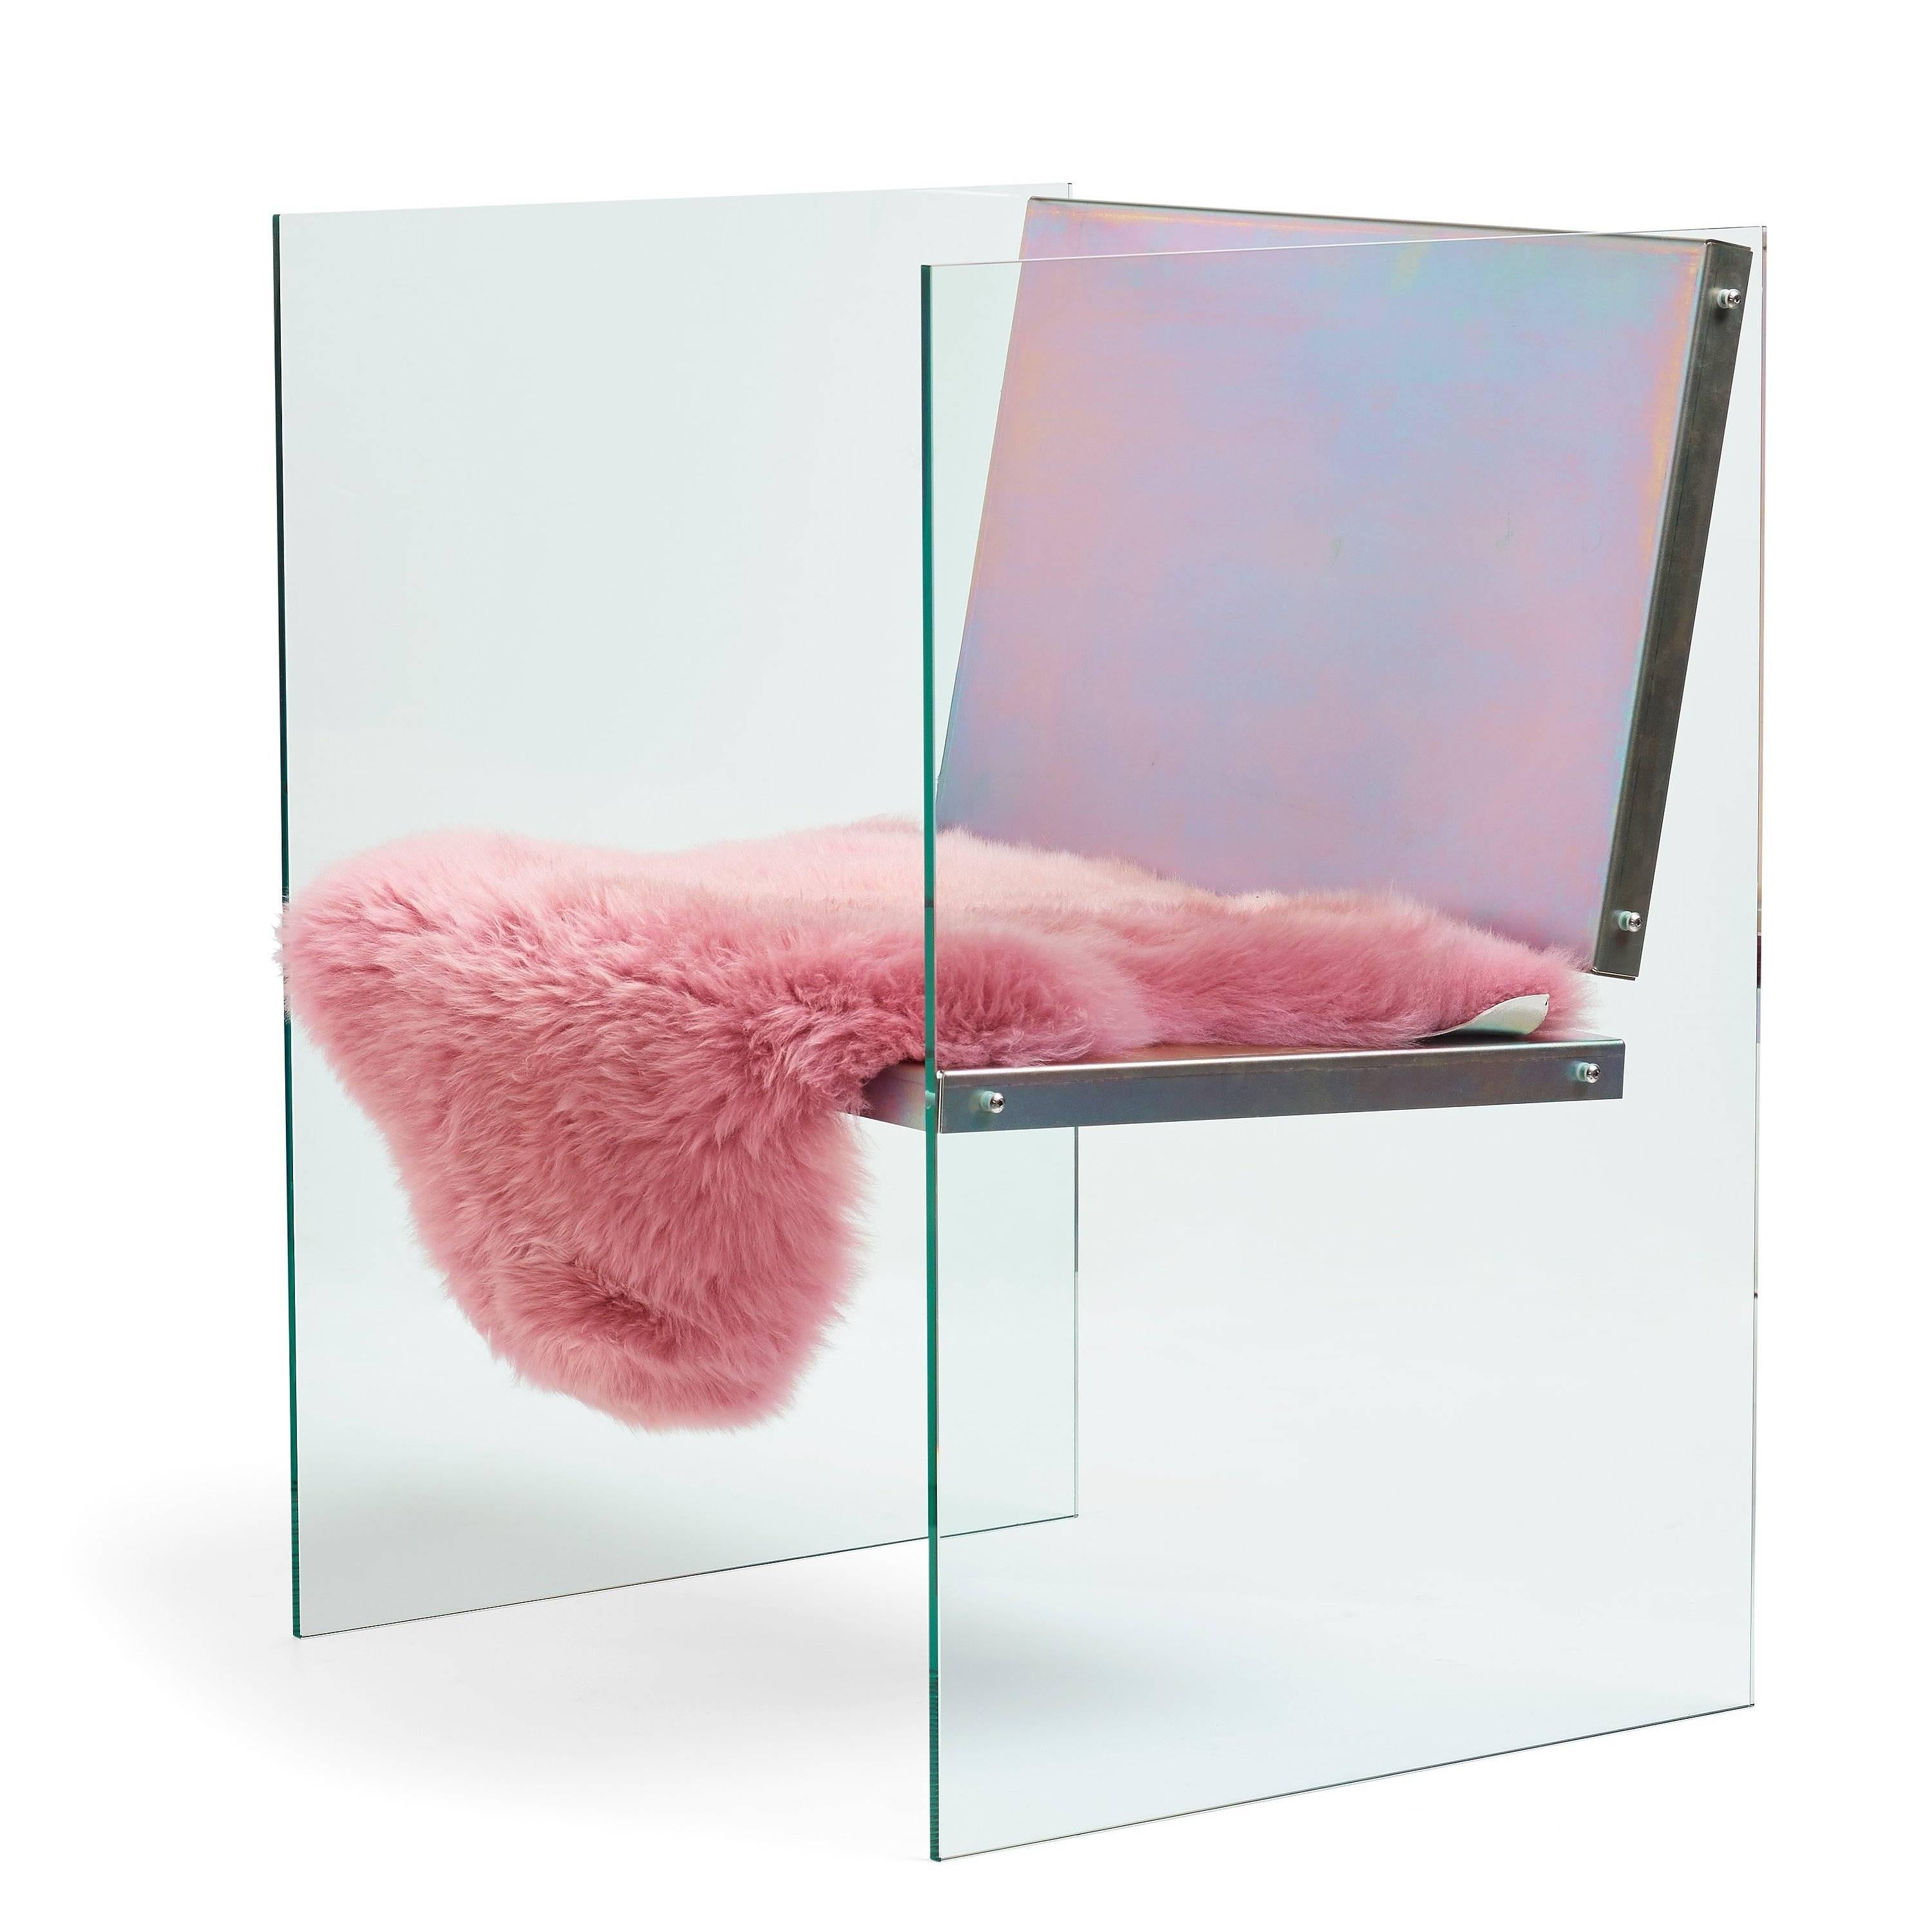 Der Stuhl aus Glas und Stahl besteht aus gehärtetem Glas, passiviertem Stahl und Schafsleder.

Fredrik Paulsens Arbeit reicht von Möbeln bis hin zu Innenarchitektur und Ausstellungsdesign. Er ist daran interessiert, einen Sinn für Gemeinschaft zu